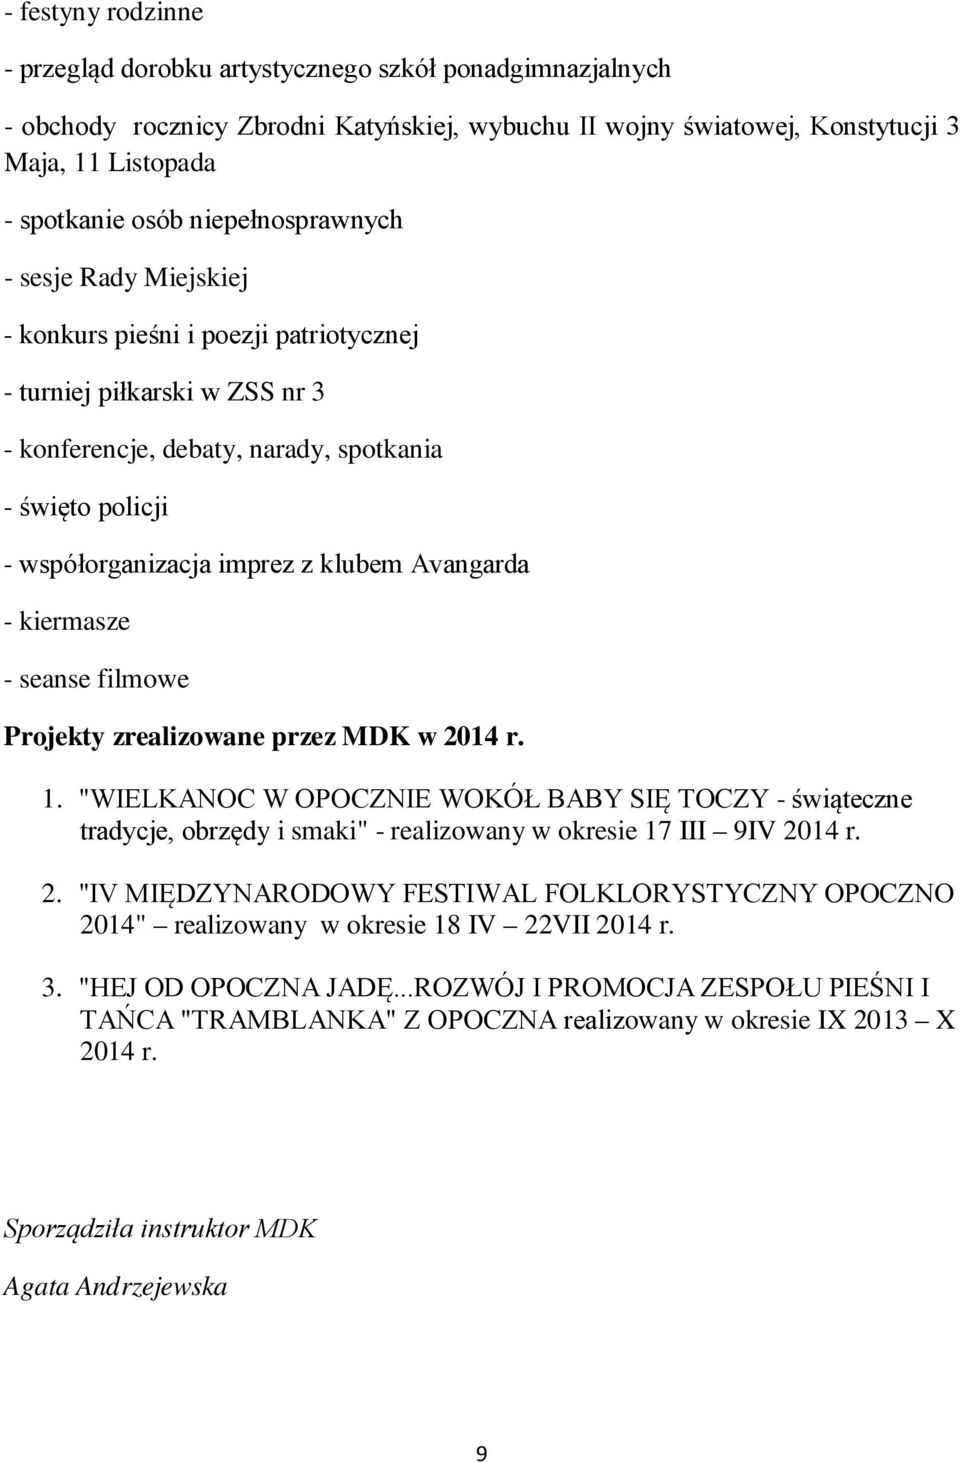 klubem Avangarda - kiermasze - seanse filmowe Projekty zrealizowane przez MDK w 2014 r. 1.